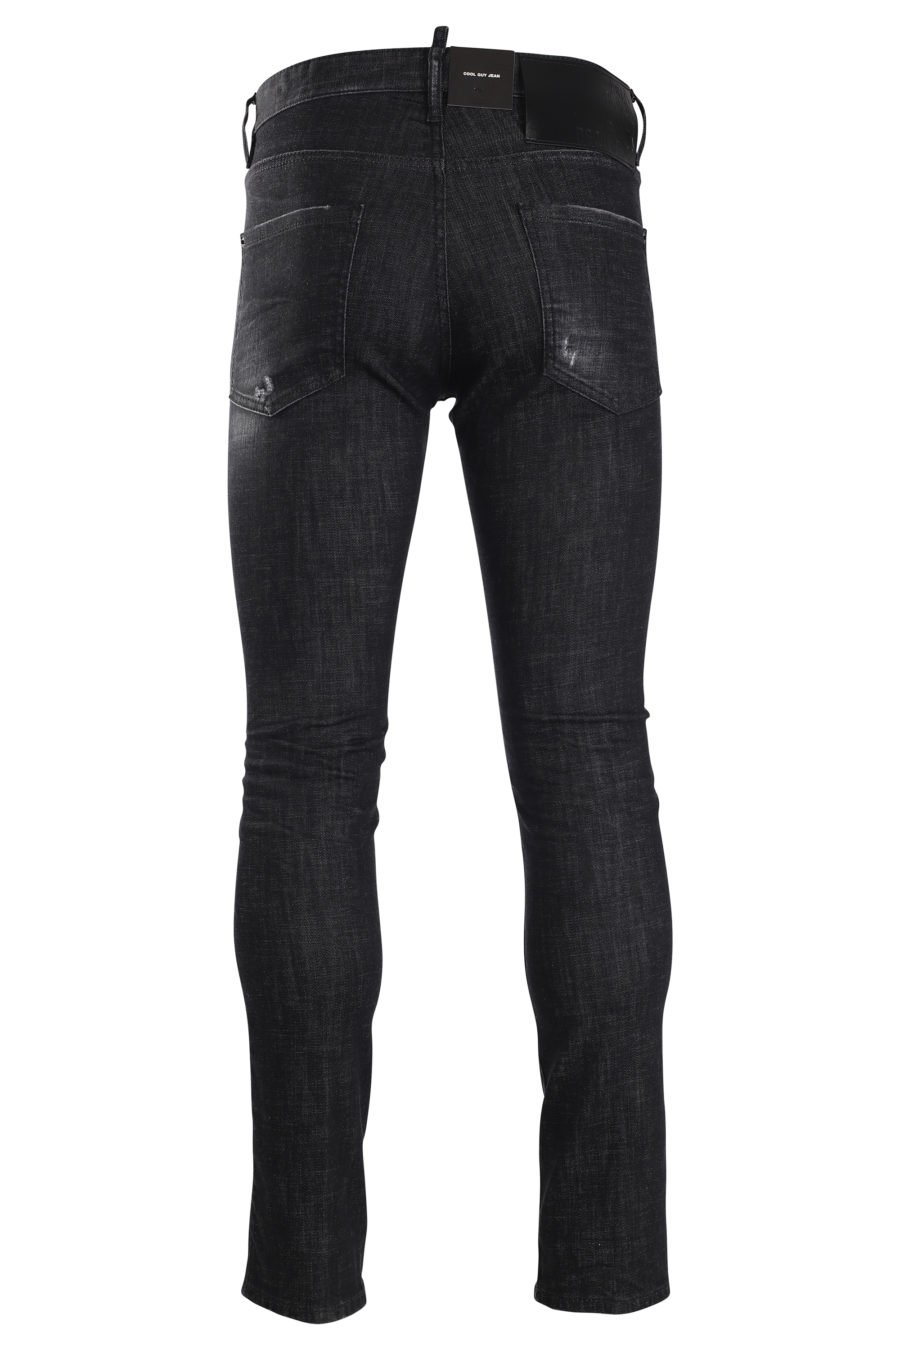 Jeans "ibra cool guy" noir - IMG 9981